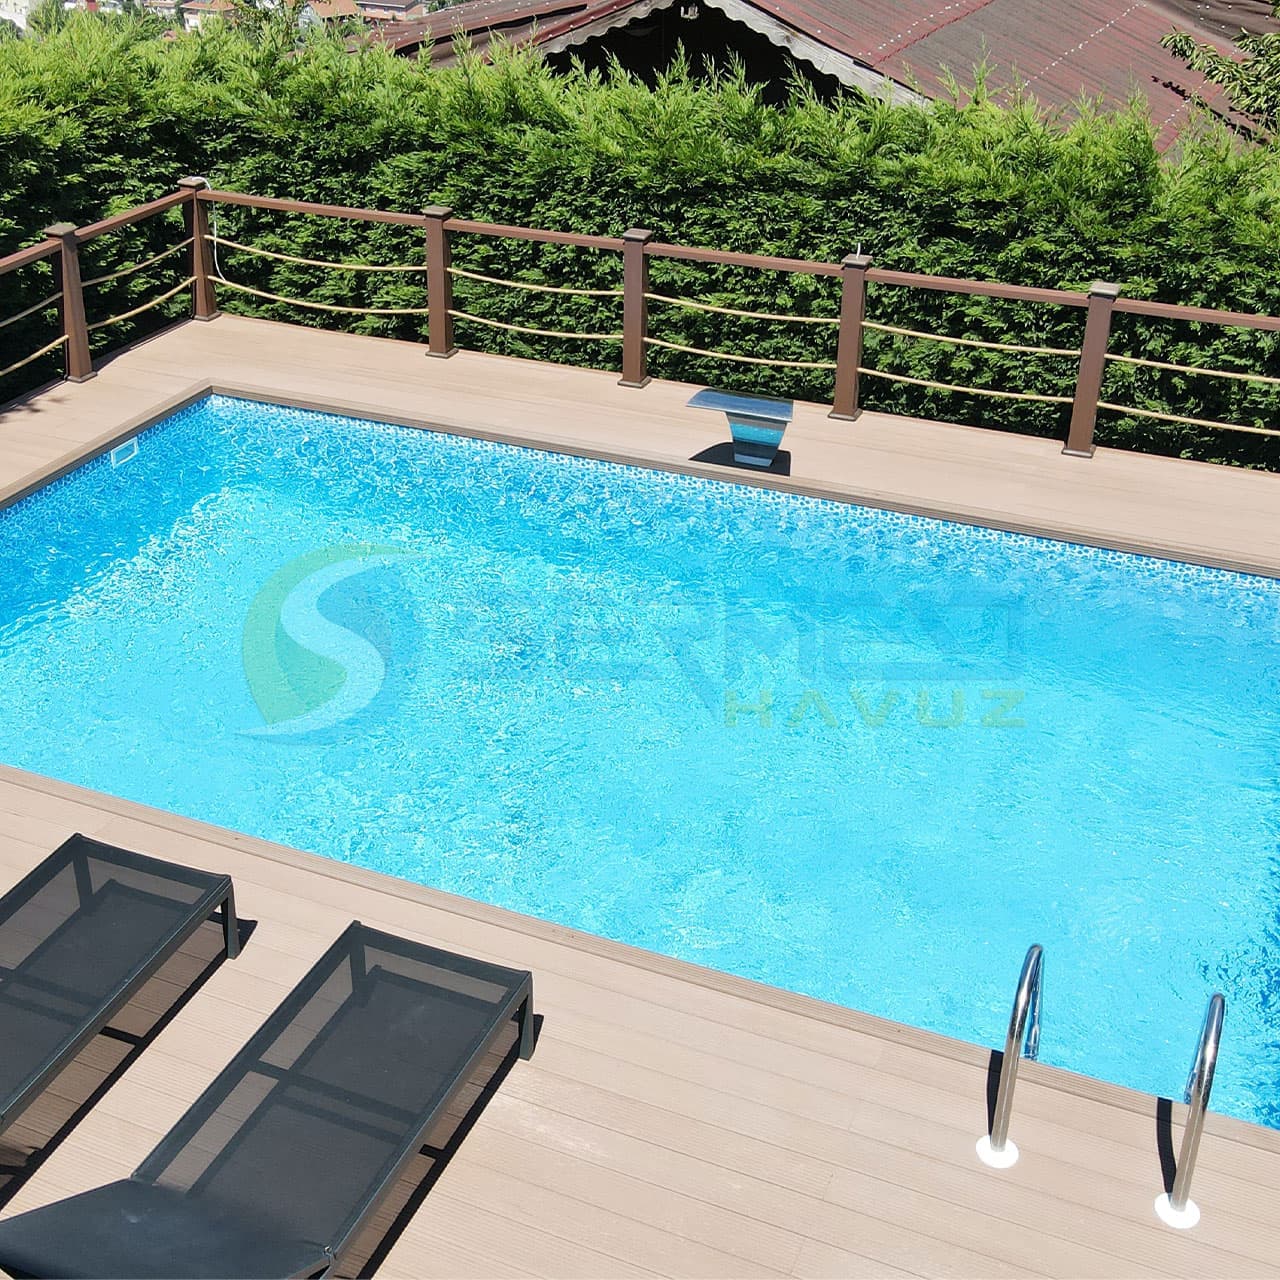 İzmir'de Sedat Bey'e Fipool Skimmerli Panel havuz Sermed Havuz Firması Tarafından Yapıldı.